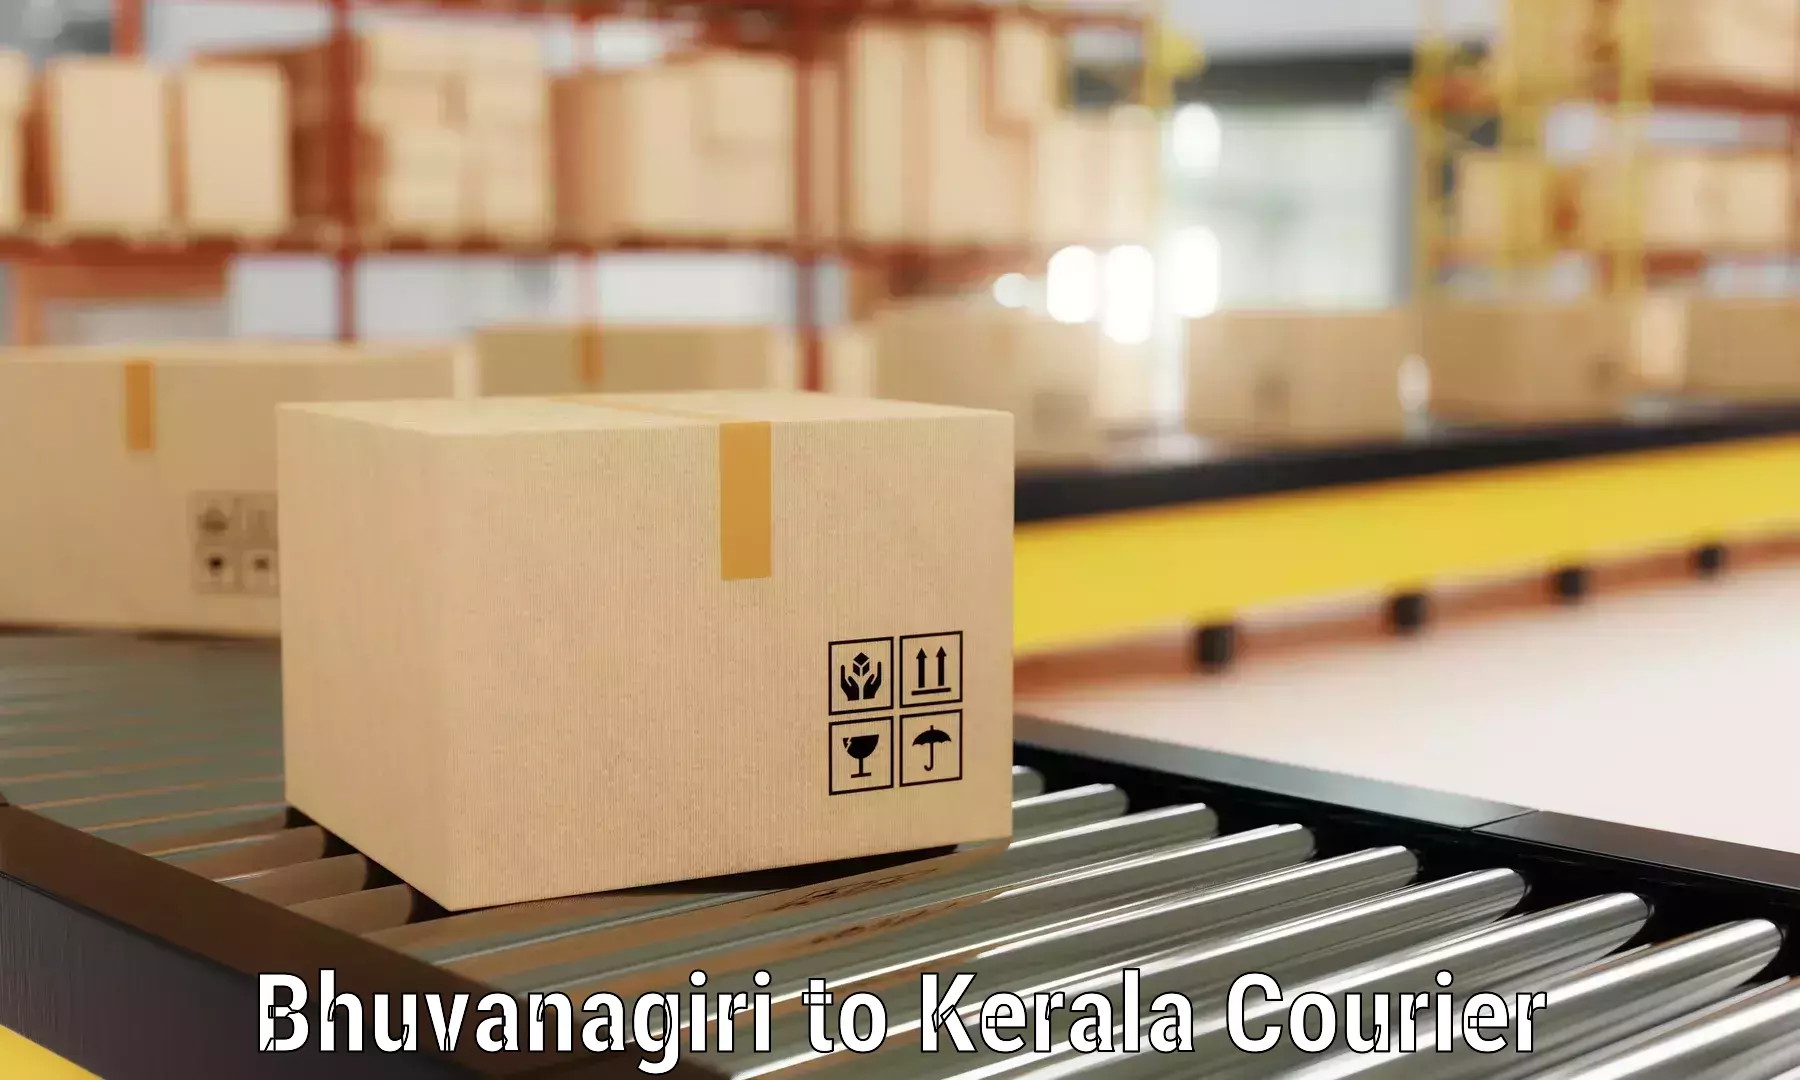 Moving and handling services Bhuvanagiri to Manjeri